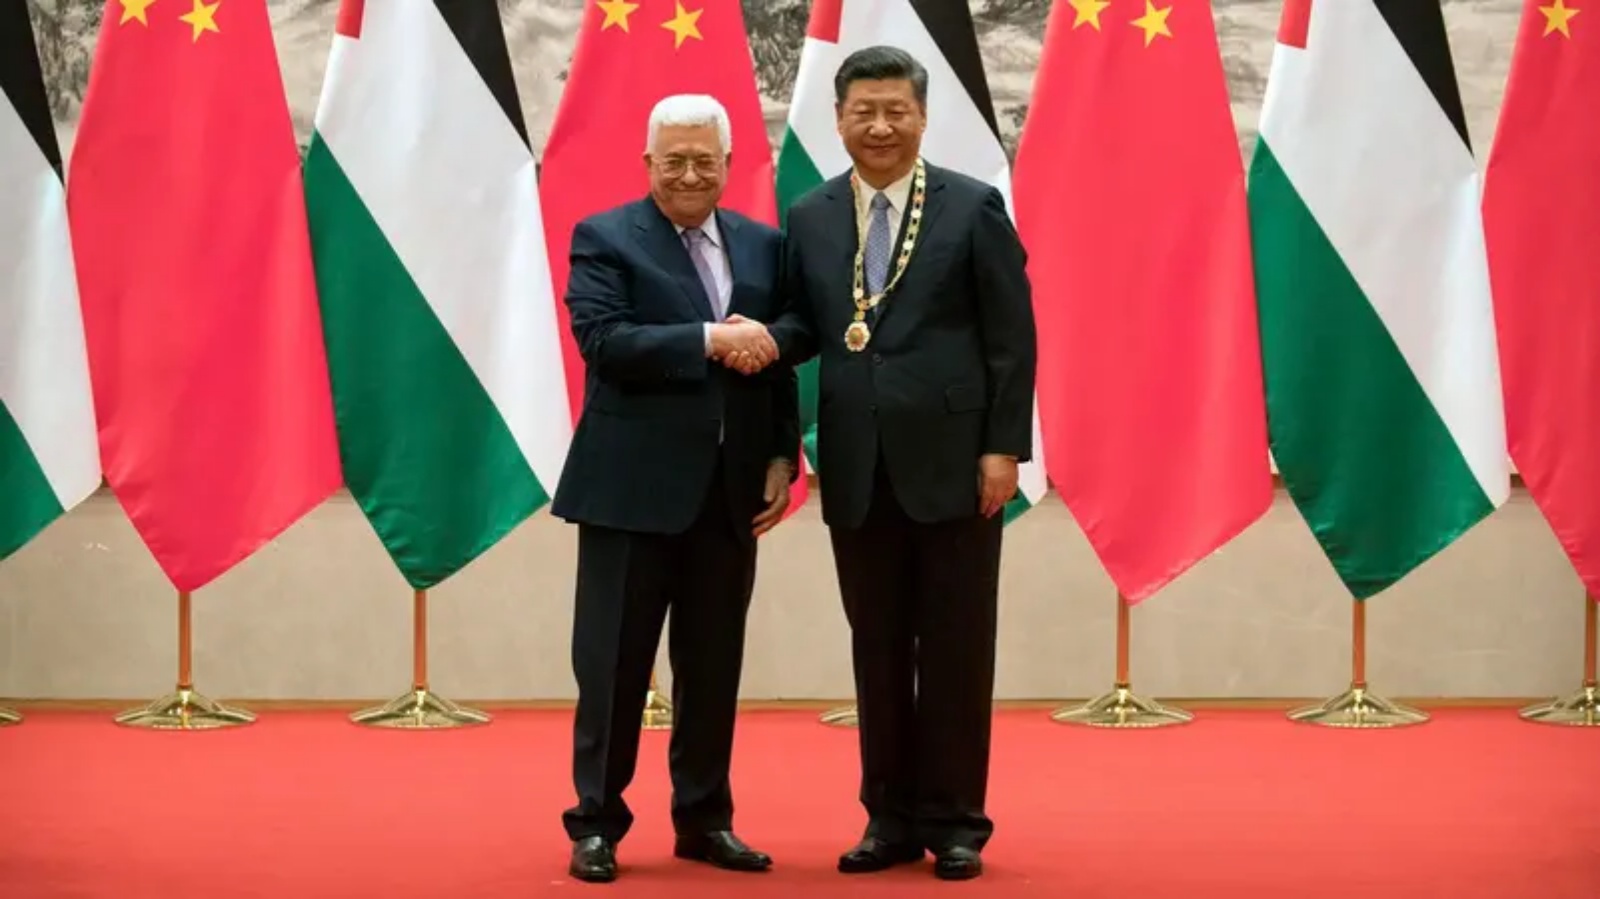 محمود عباس وشي جين بينغ خلال حفل التوقيع في قاعة الشعب الكبرى في بكين (أرشيفية)